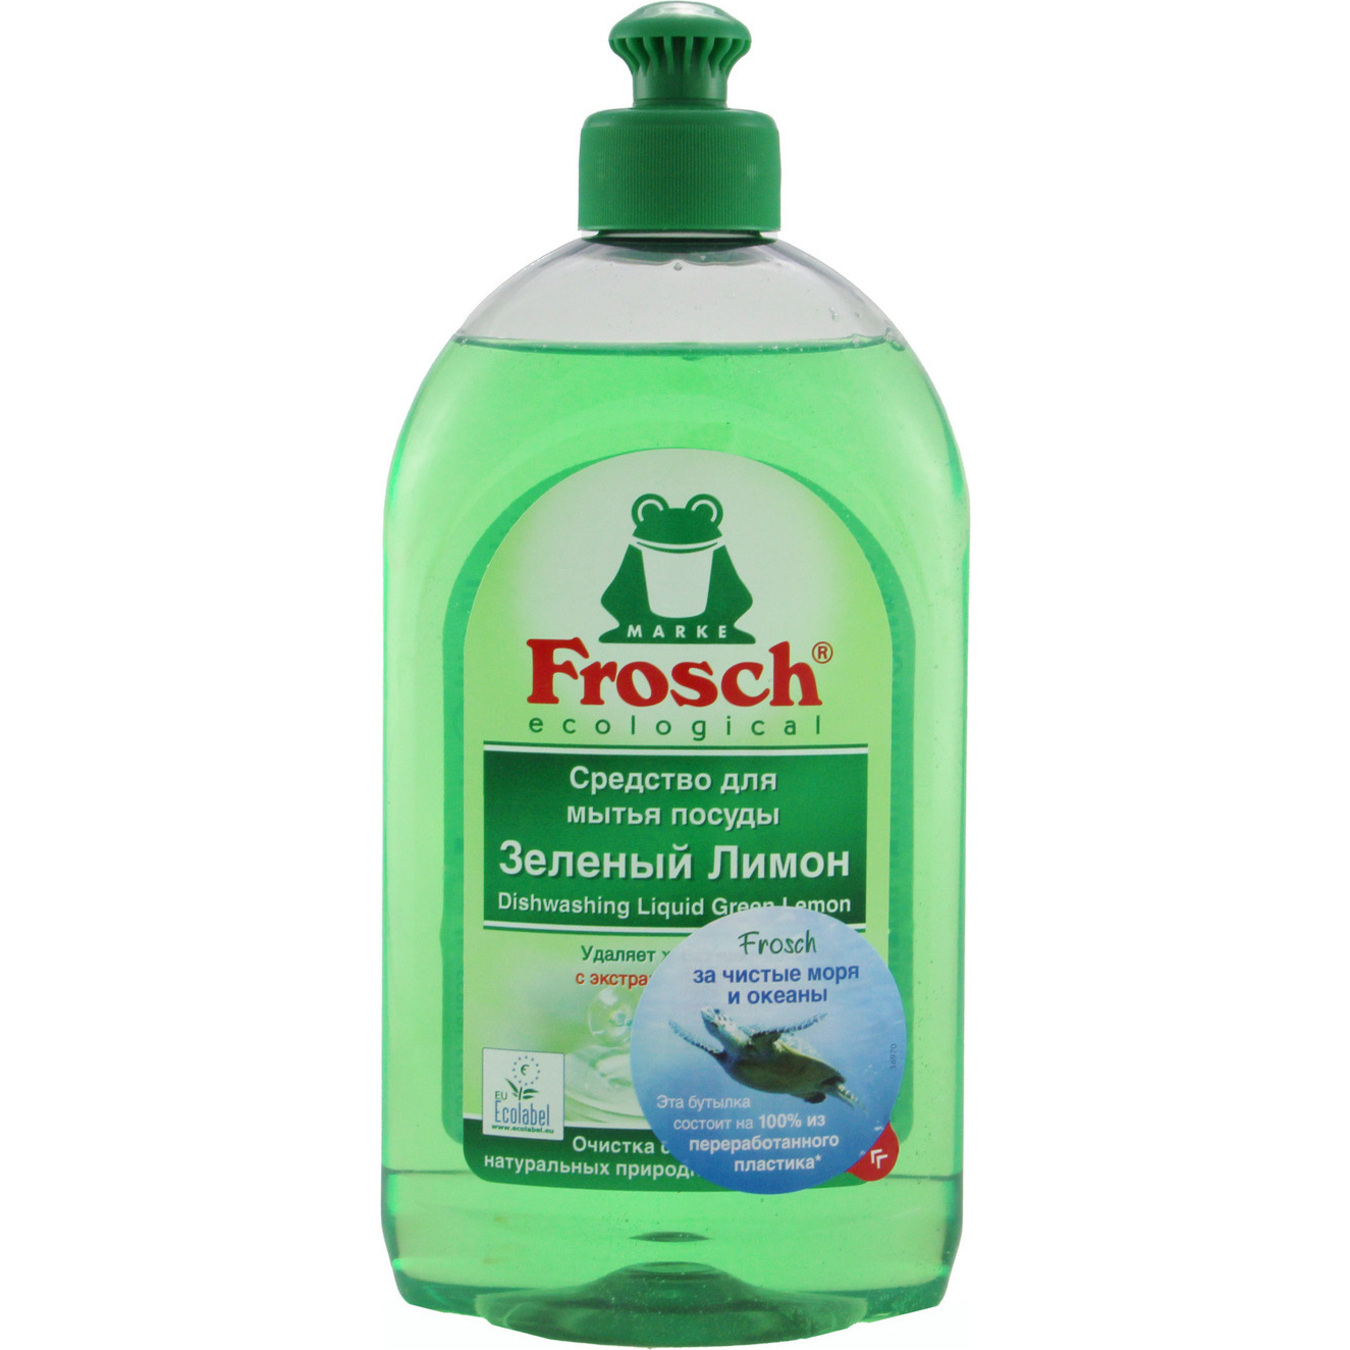 Frosch Dishwashing detergent 500ml